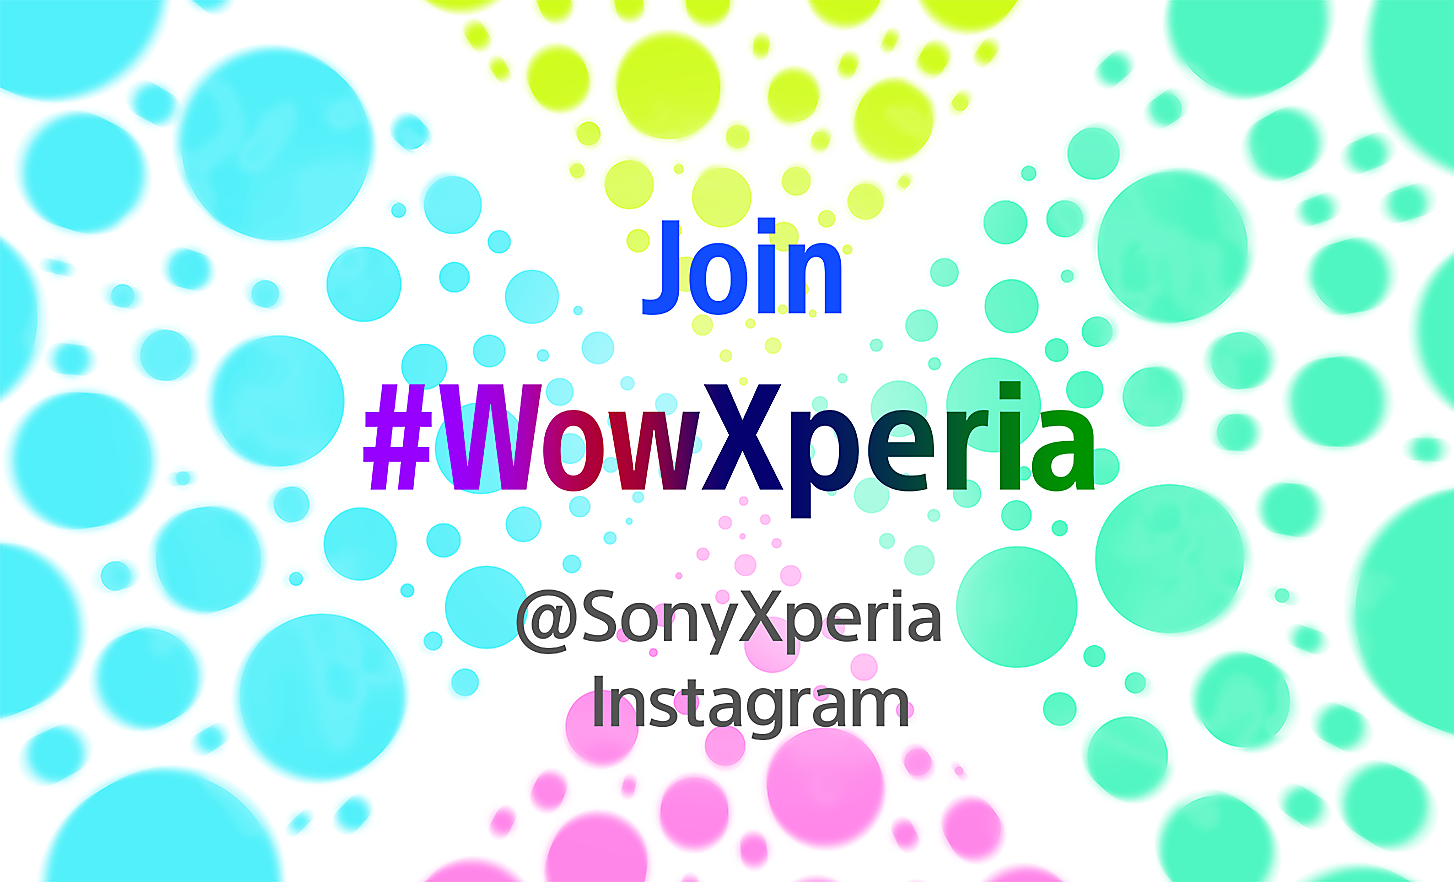 Snímek s bílým pozadím a barevnými bublinami, s překrytým textem a hashtagy vysvětlujícími, jak se zapojit do kampaně „Wow with Xperia“